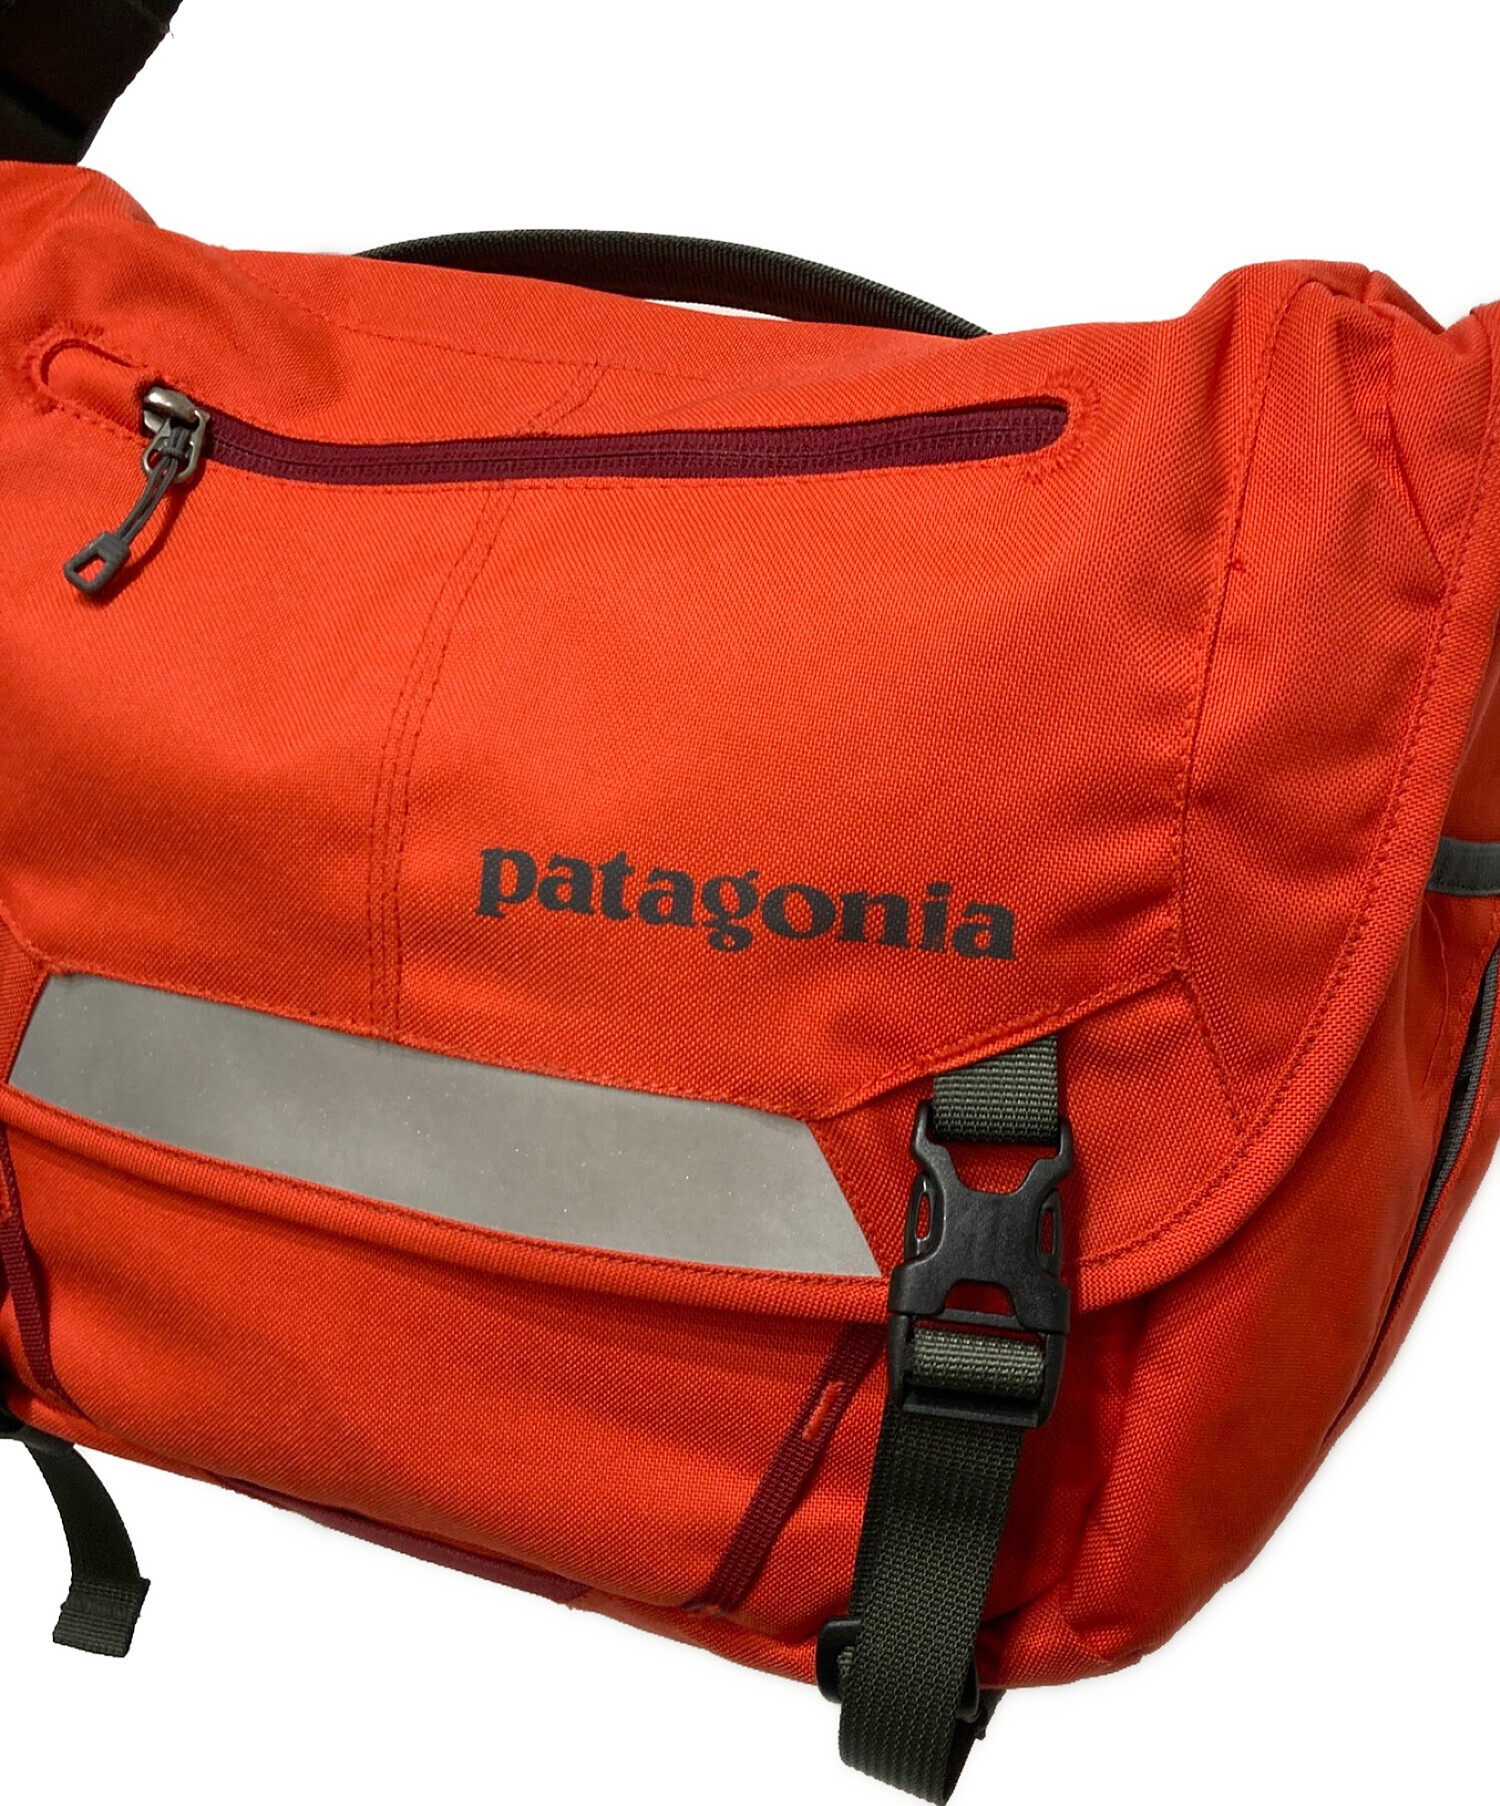 Patagonia (パタゴニア) メッセンジャーバッグ レッド サイズ:なし